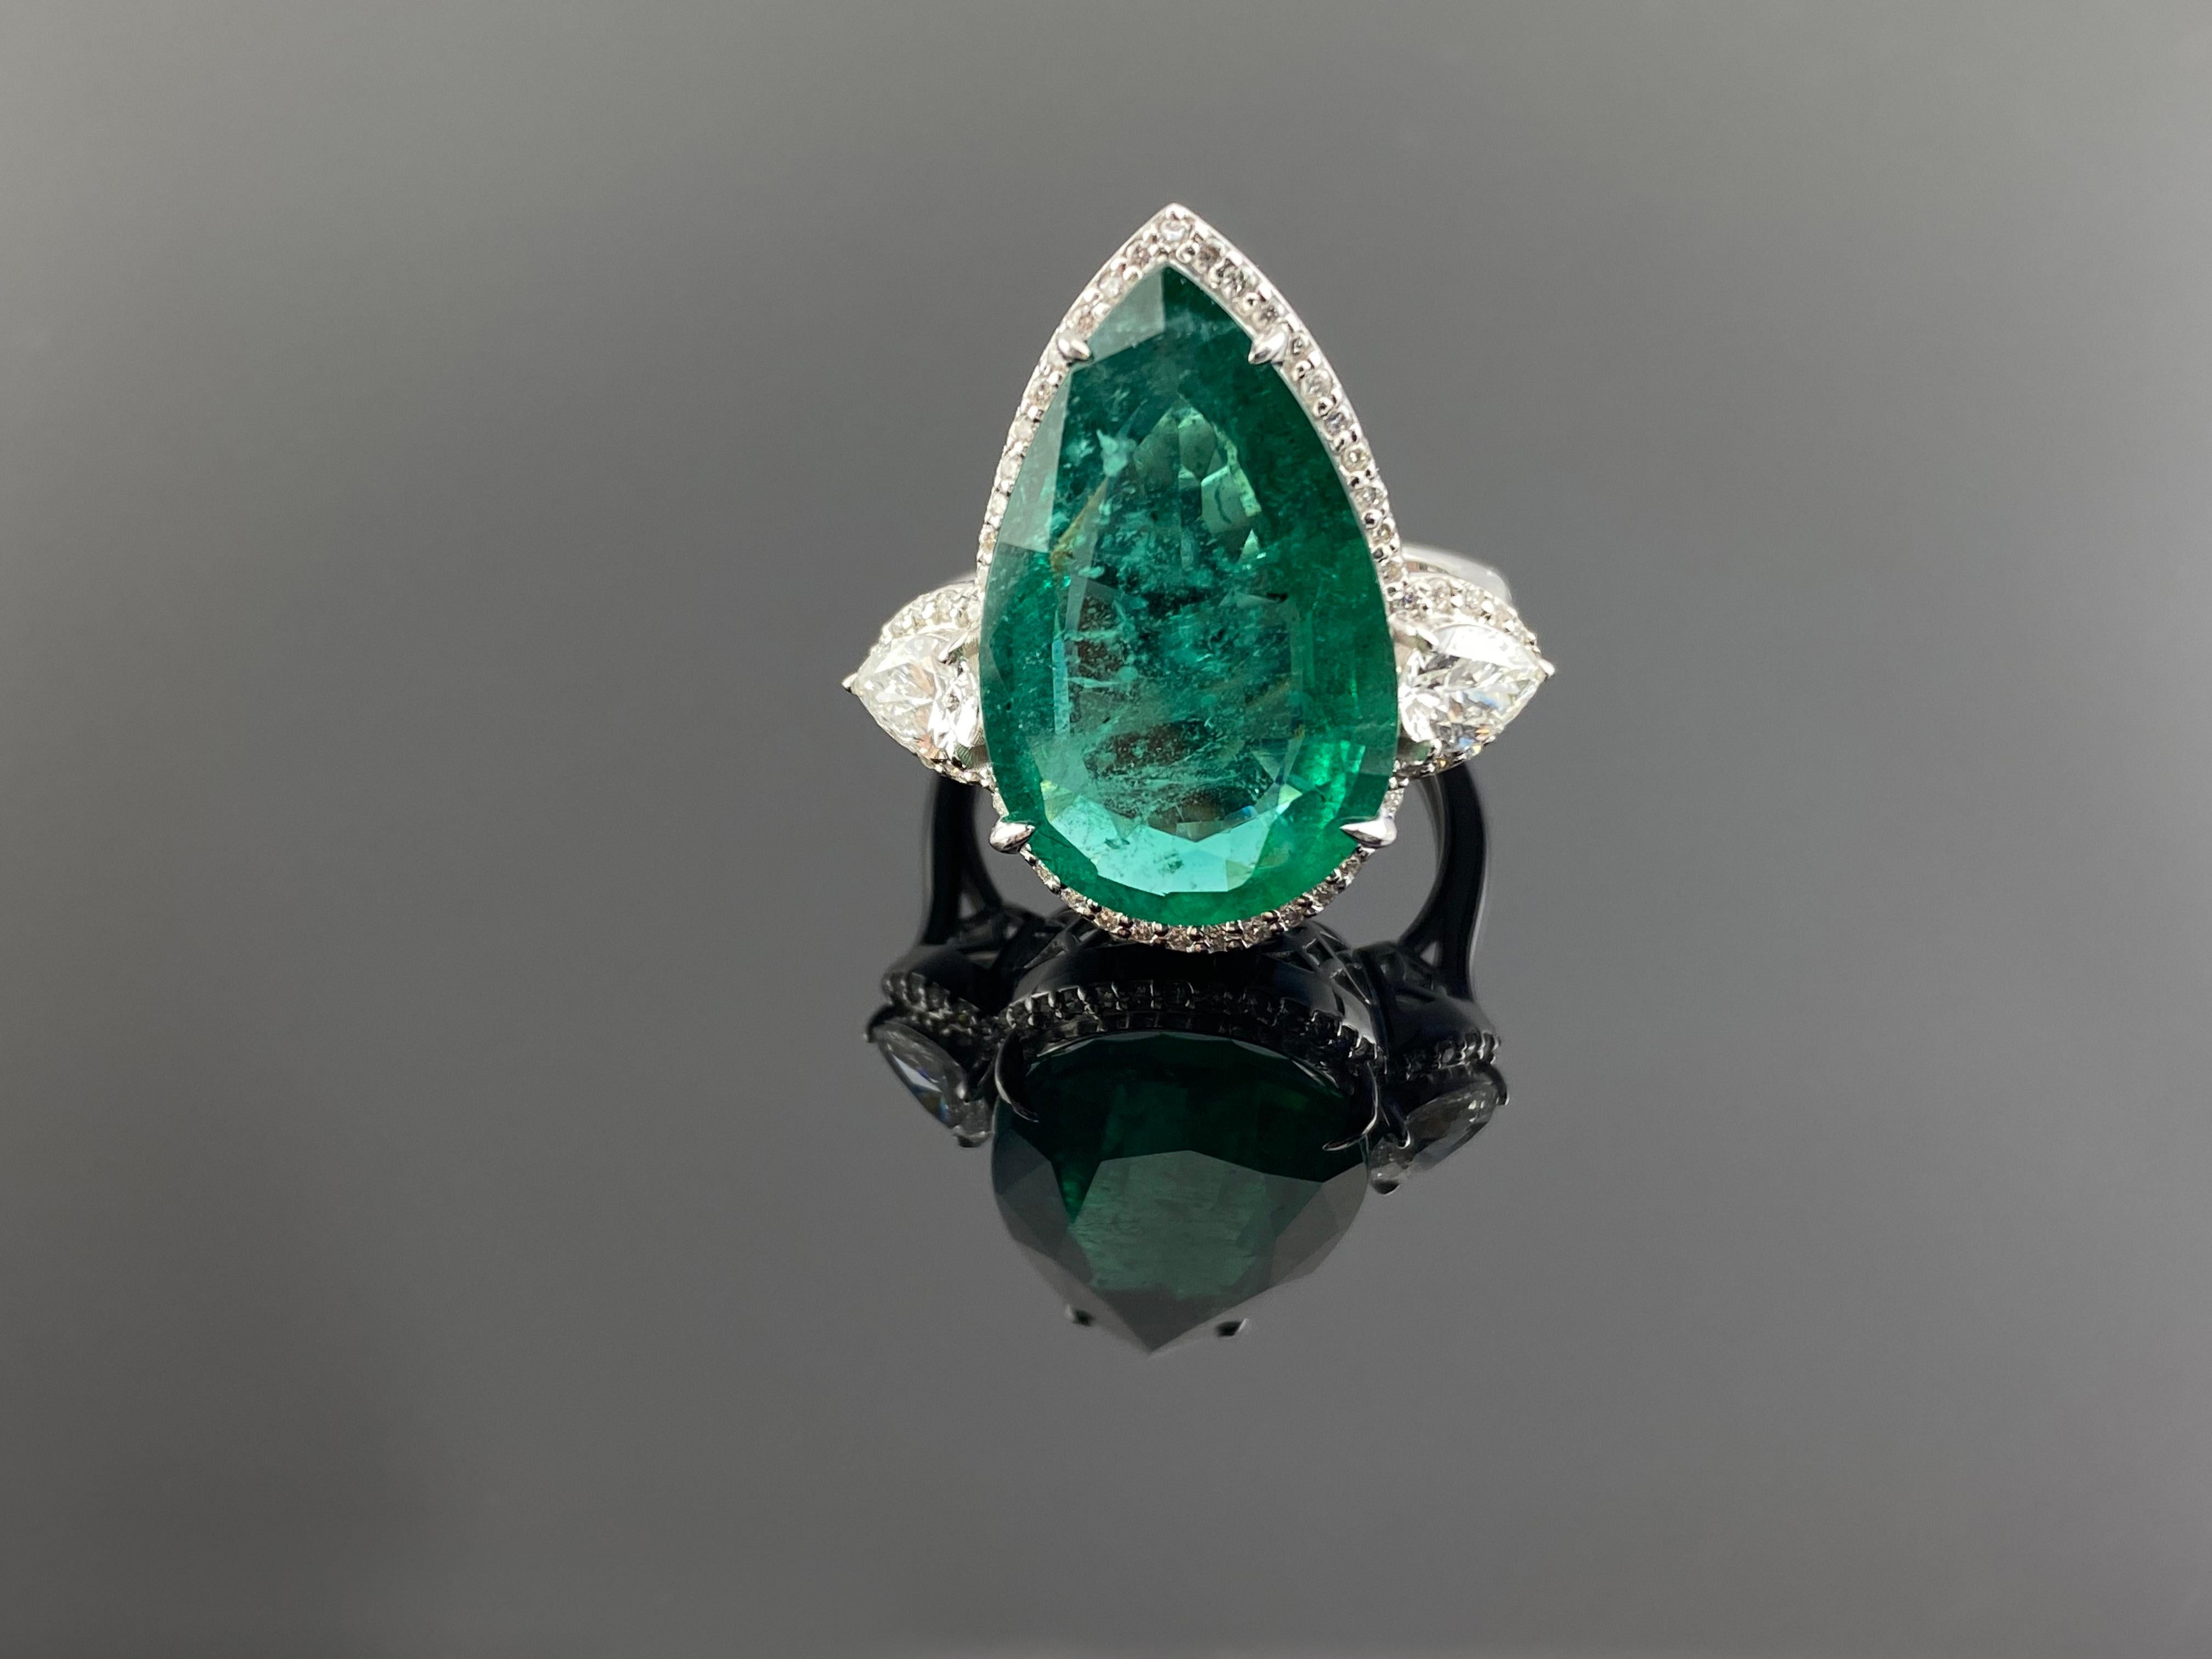 Lebendiger zertifizierter sambischer Smaragd von 5,7 Karat, eingebettet in einen auffälligen Goldring mit Diamanten. Dieser lebhafte Smaragd ist von hervorragender Reinheit und Schliff. Das Edelsteinzertifikat ist der Bildauswahl zu Ihrer